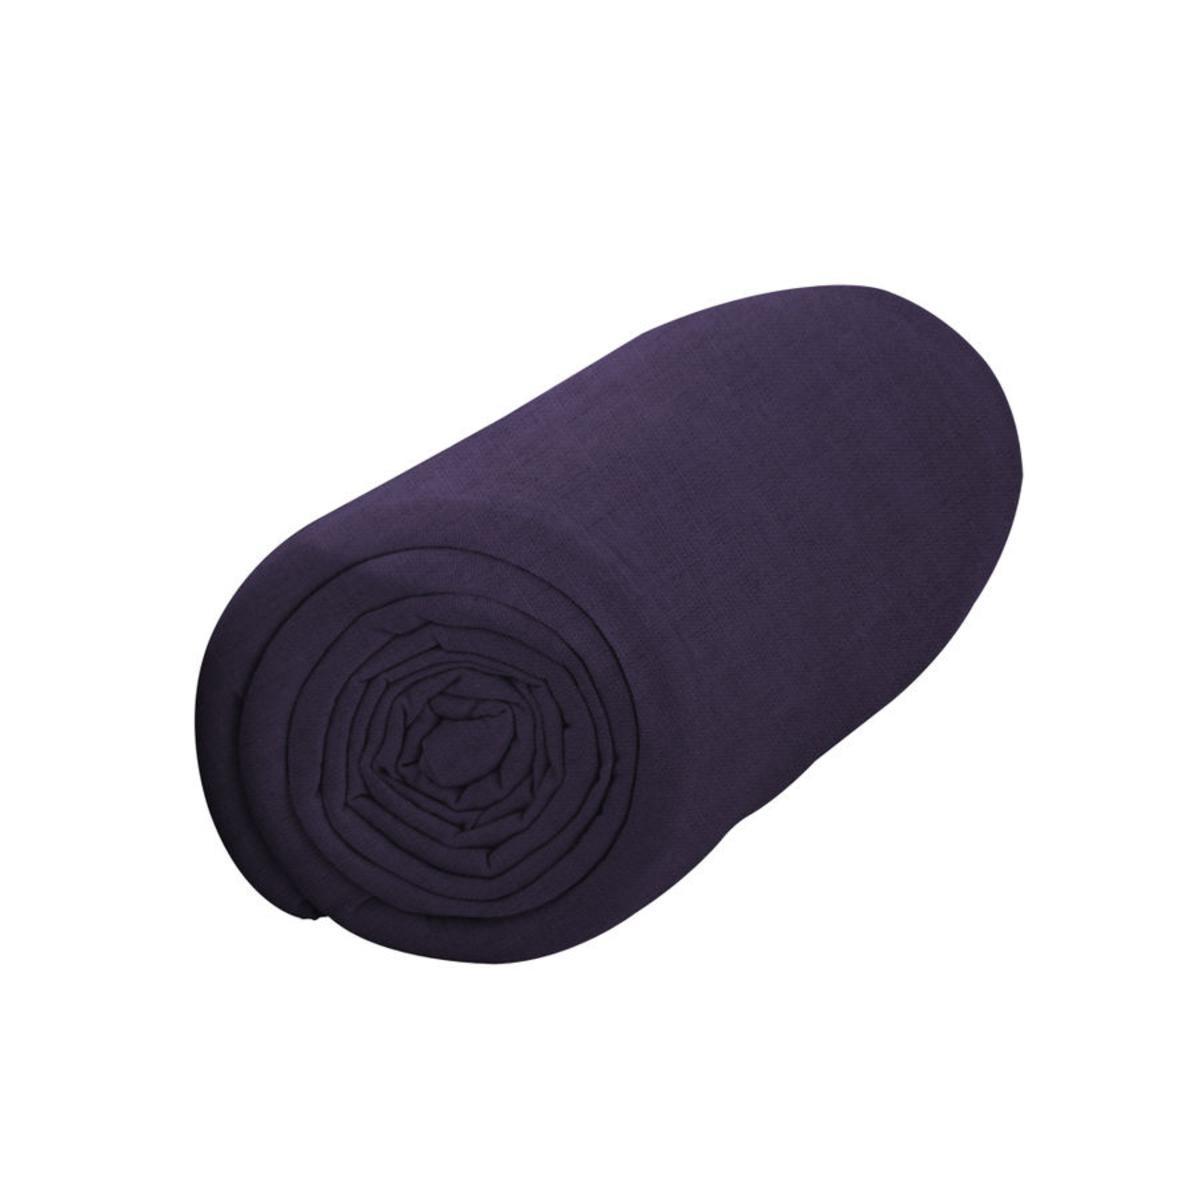 Drap housse pour matelas 100% coton - 90 x 190 cm - violet deep purple